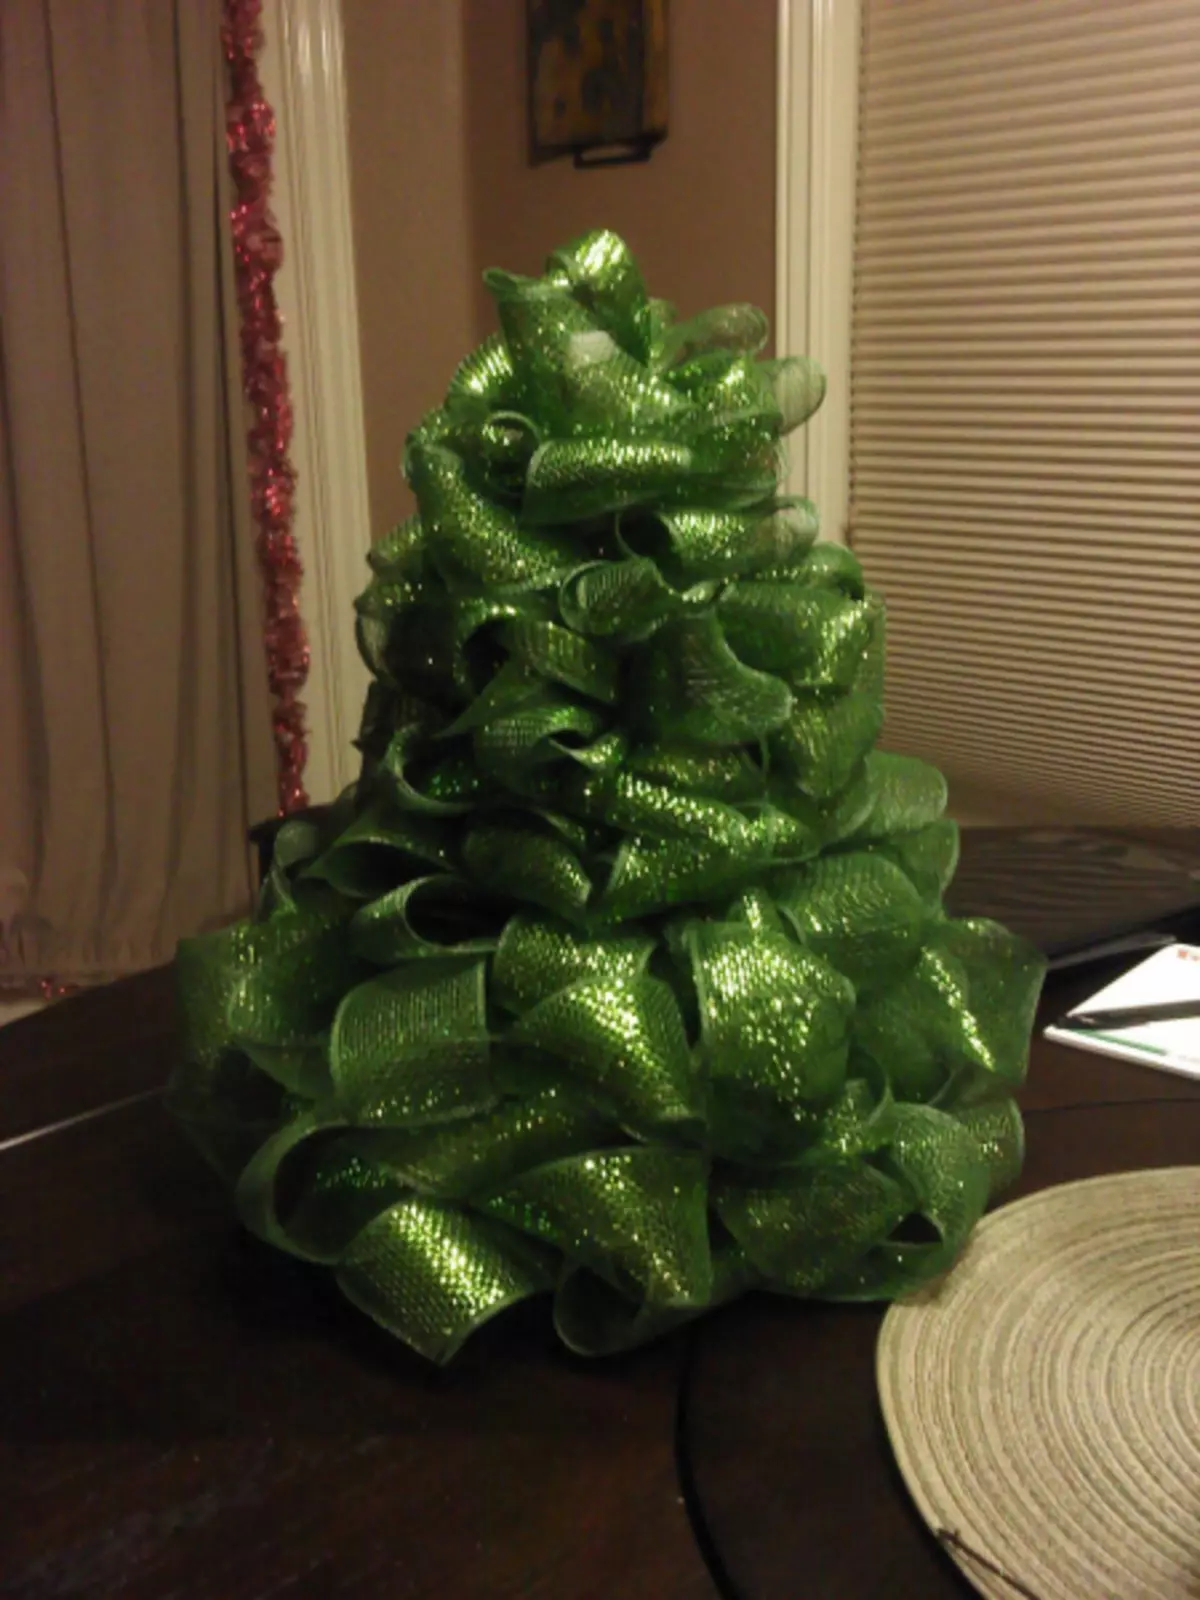 चार घर वाले क्रिसमस के पेड़ इसे स्वयं करते हैं